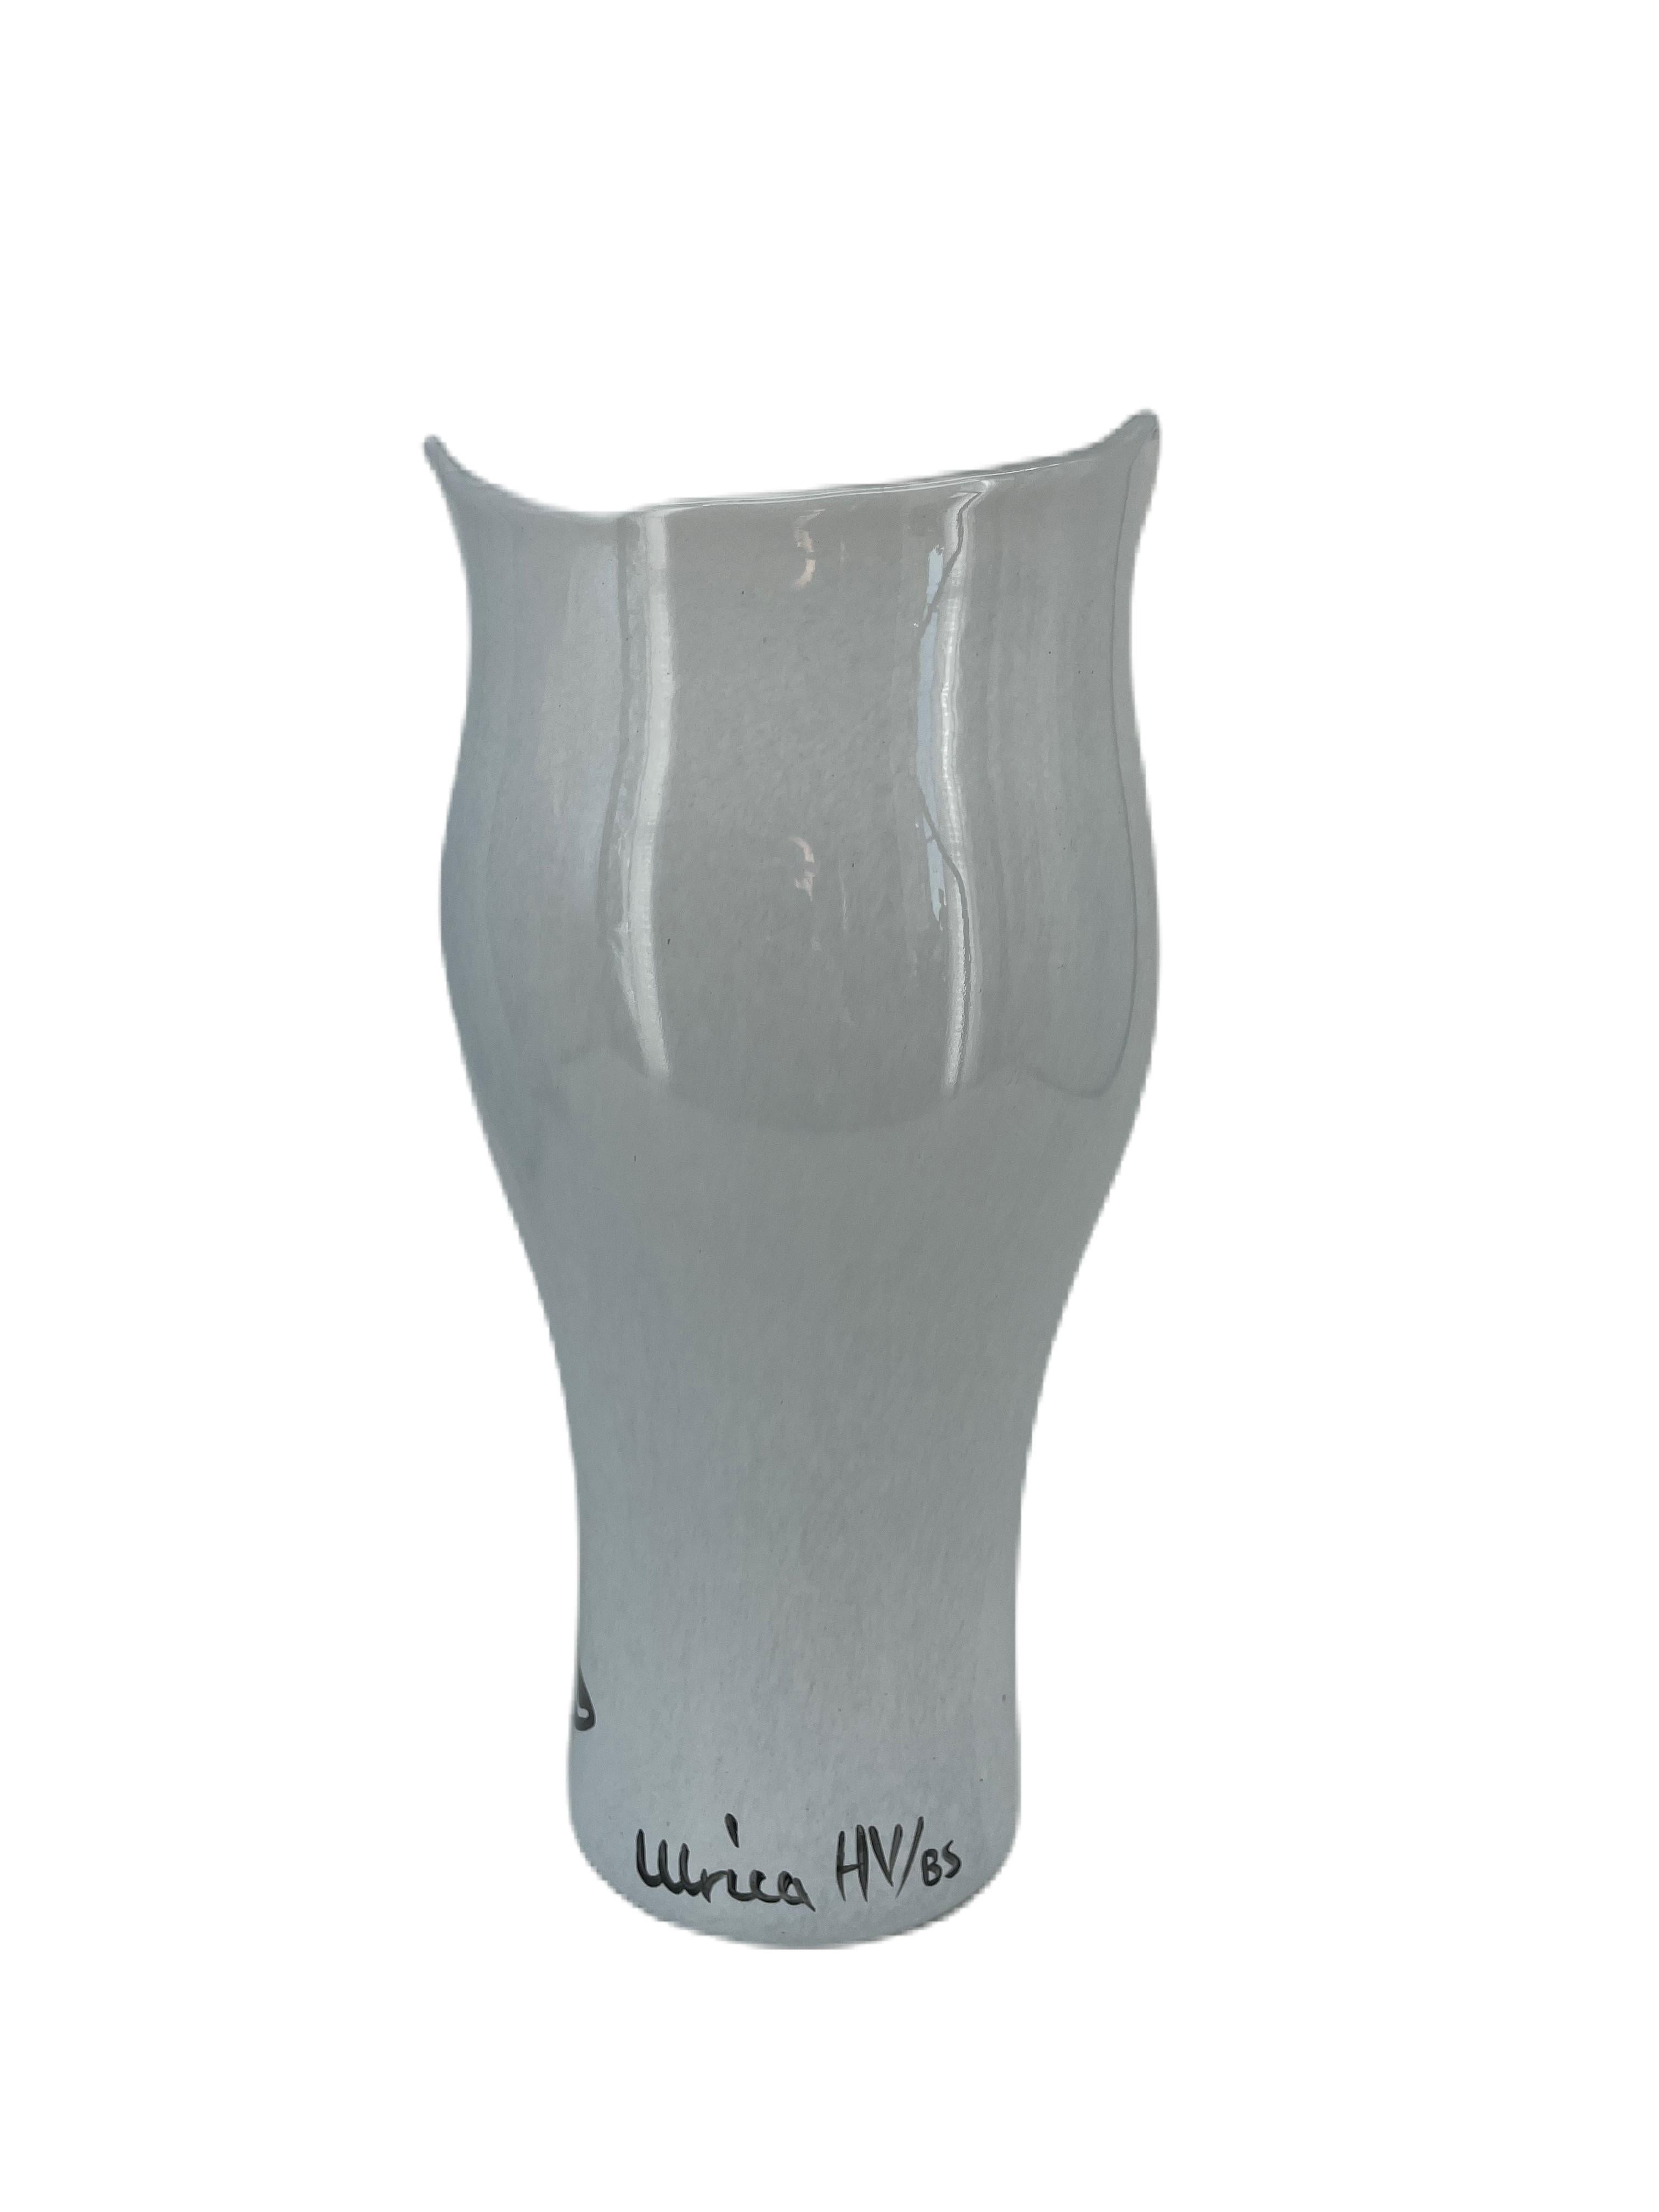 Ulrica Hydman Vallien Glasvase mit Kopf, weißem Glas und stilistischen Merkmalen. Sie ist mundgeblasen und handdekoriert, was ihr einen einzigartigen Charakter verleiht. Ulrica entwarf die Vase in den 2000er Jahren als Teil der Serie 